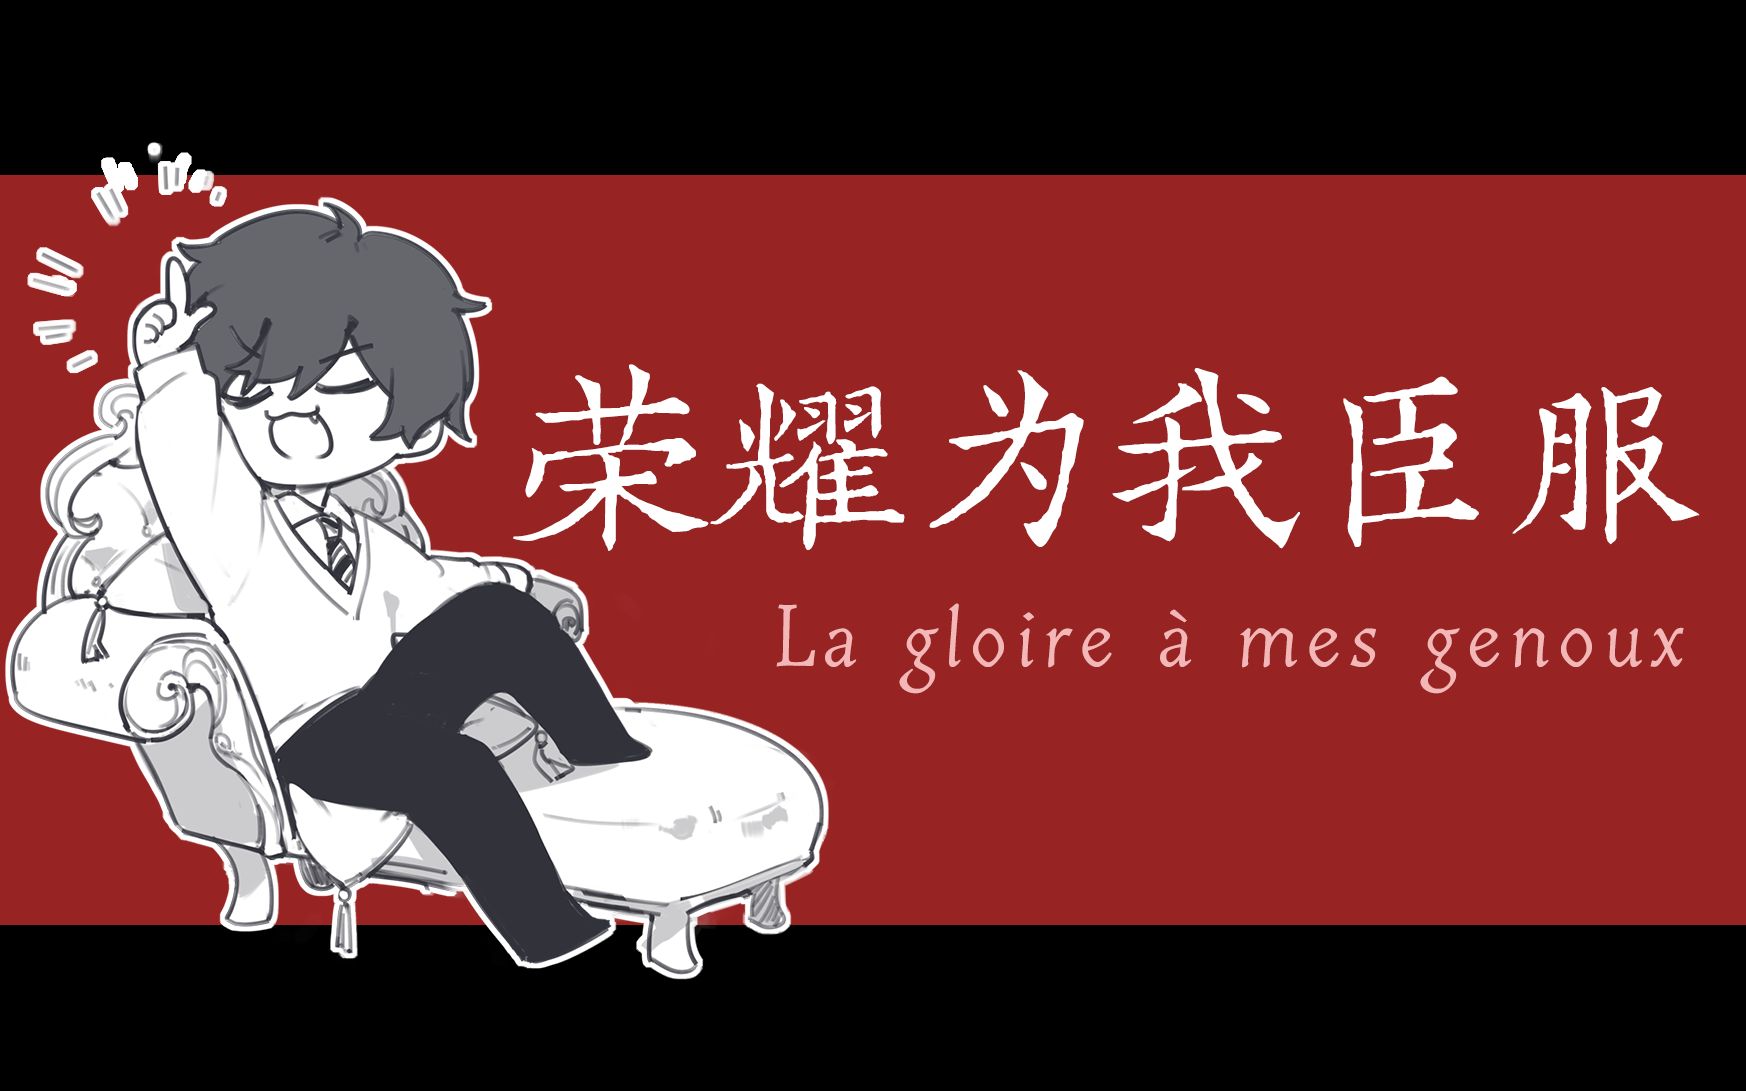 『 呐 呐 呐. 为 我 臣 服 吧 』丨La gloire à mes genoux 徐均朔填词中文版翻唱